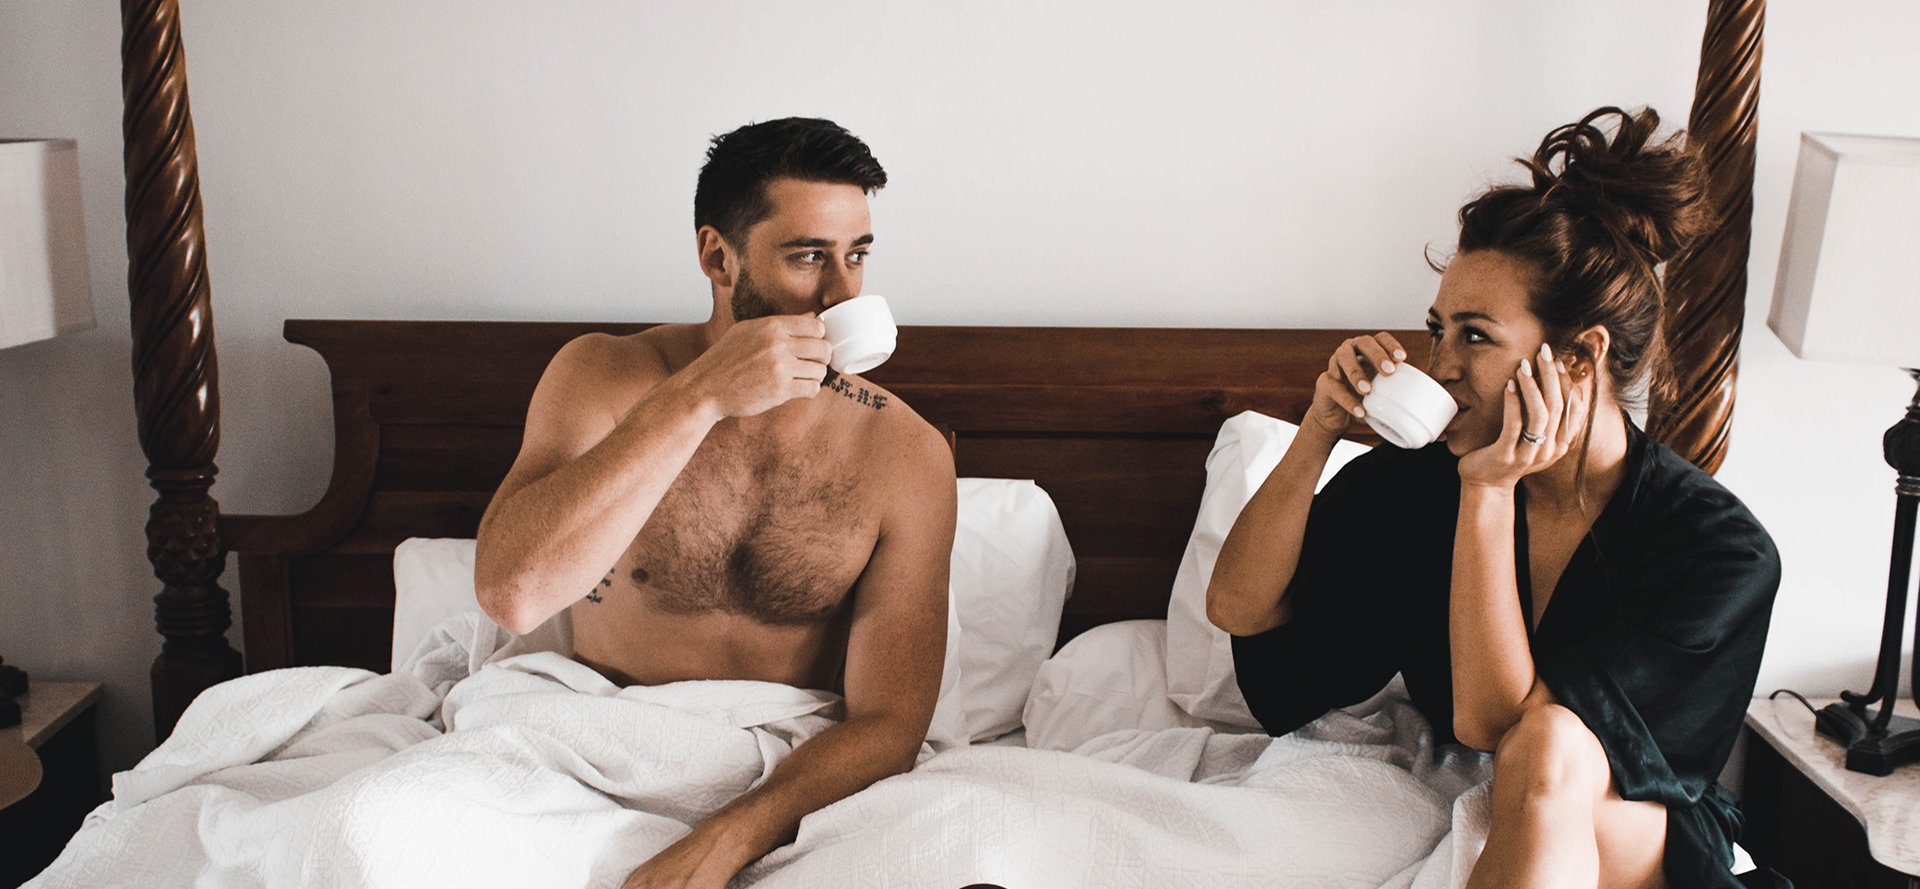 Verheiratete Frau mit ihrem Liebhaber beim Kaffeetrinken im Bett.